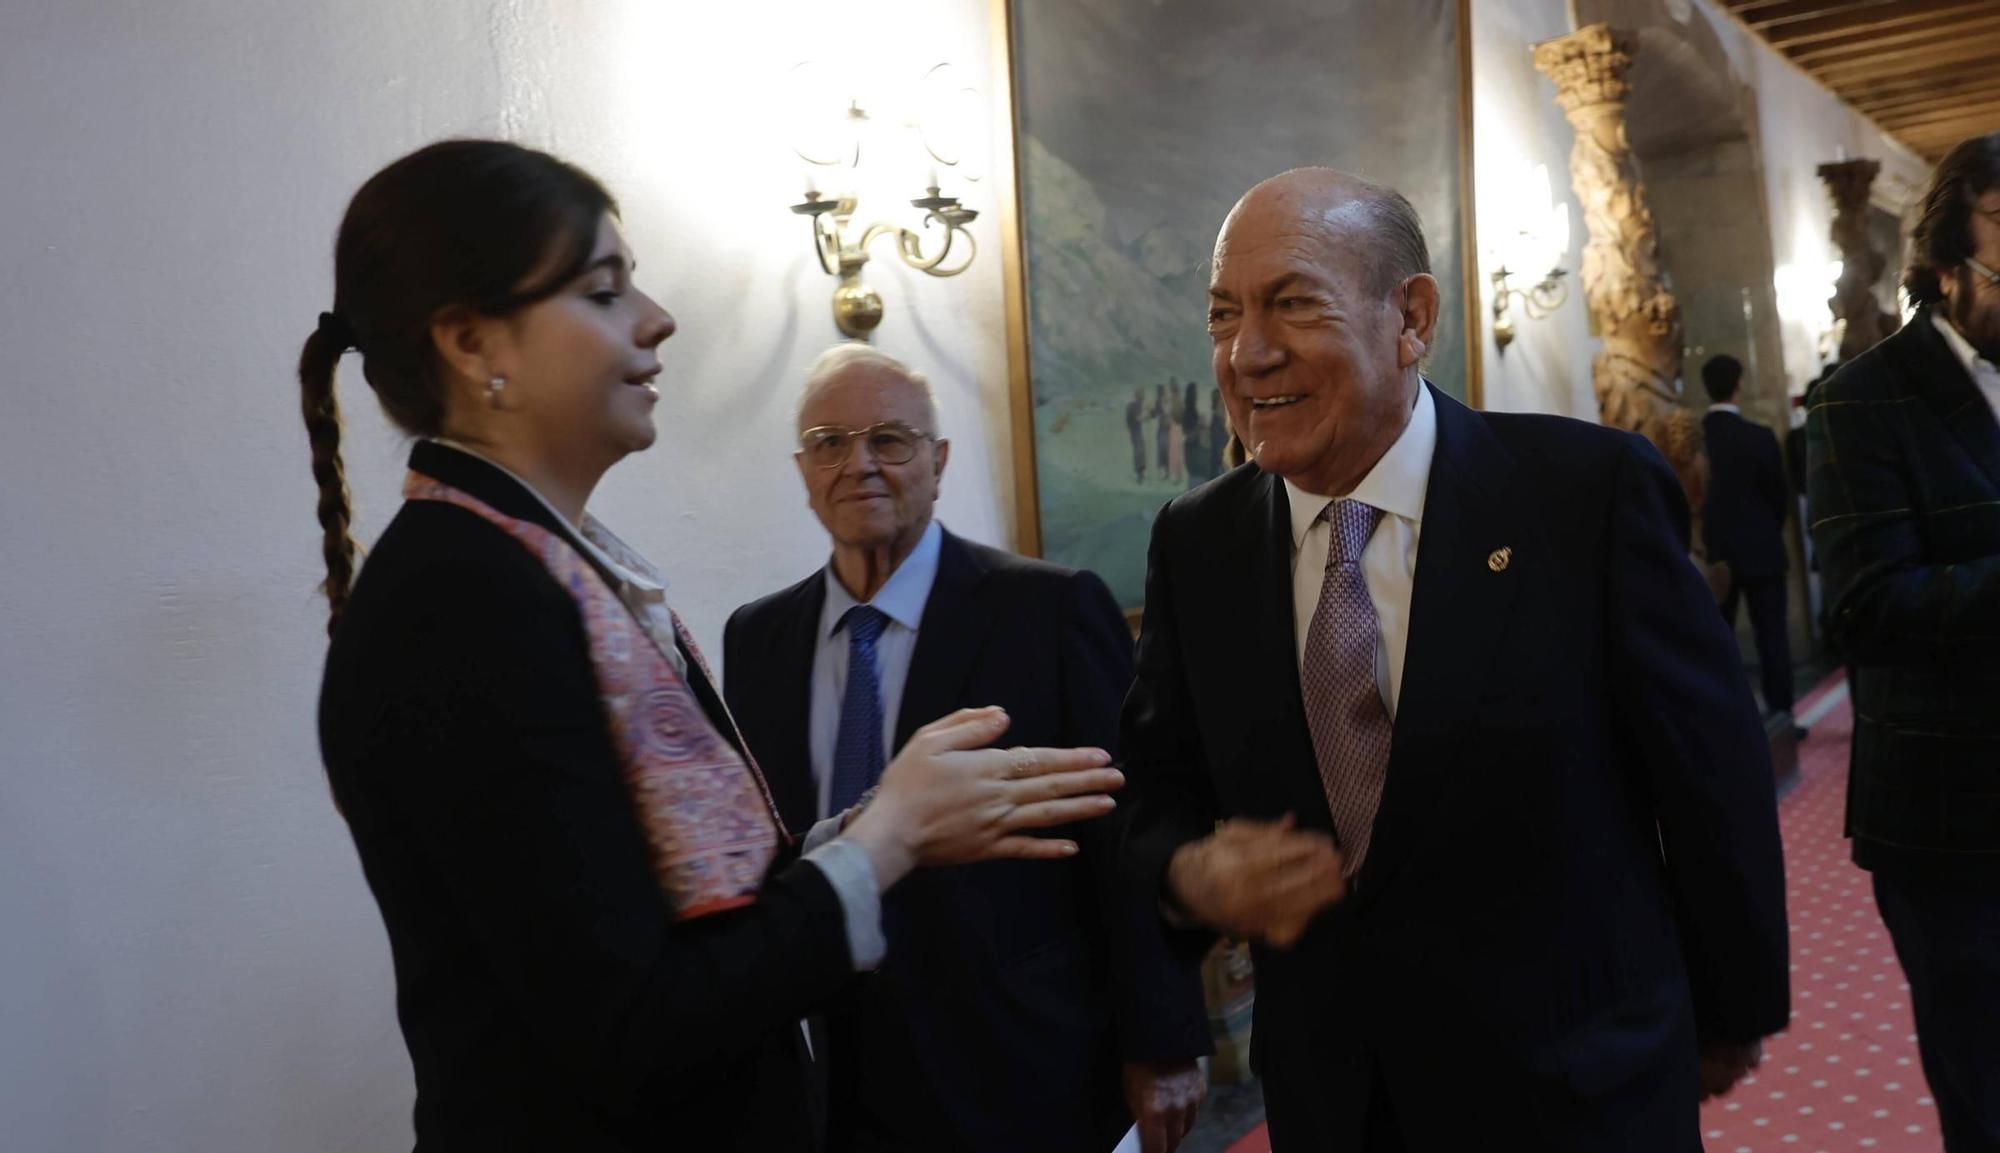 EN IMÁGENES: Personalidades, políticos y premiados se dan cita en el hotel de la Reconquista antes de la ceremonia de entrega de los Premios "Princesa"